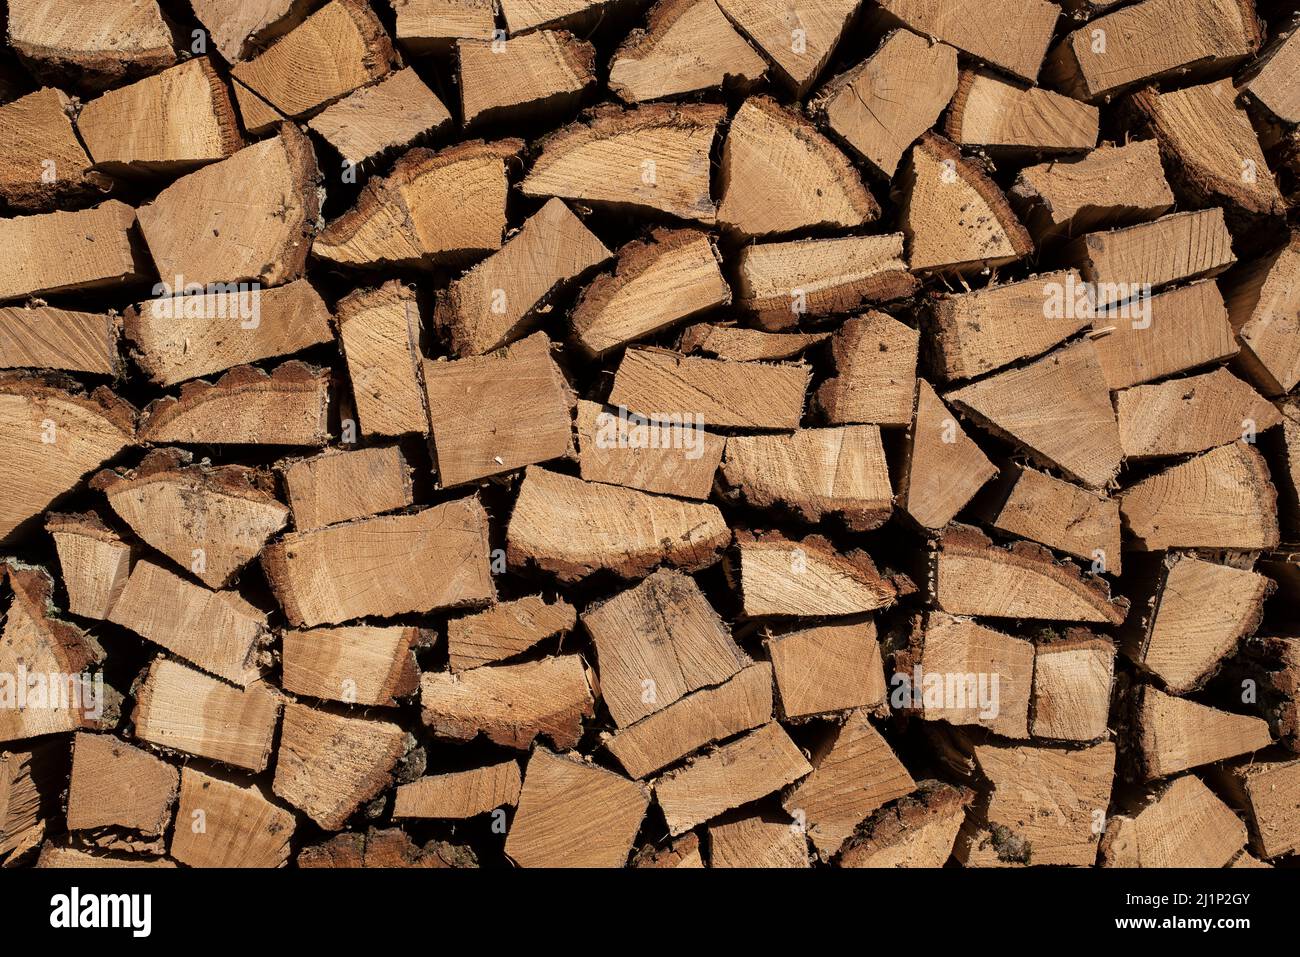 primer plano de la madera picada como energía renovable para calentar en invierno Foto de stock